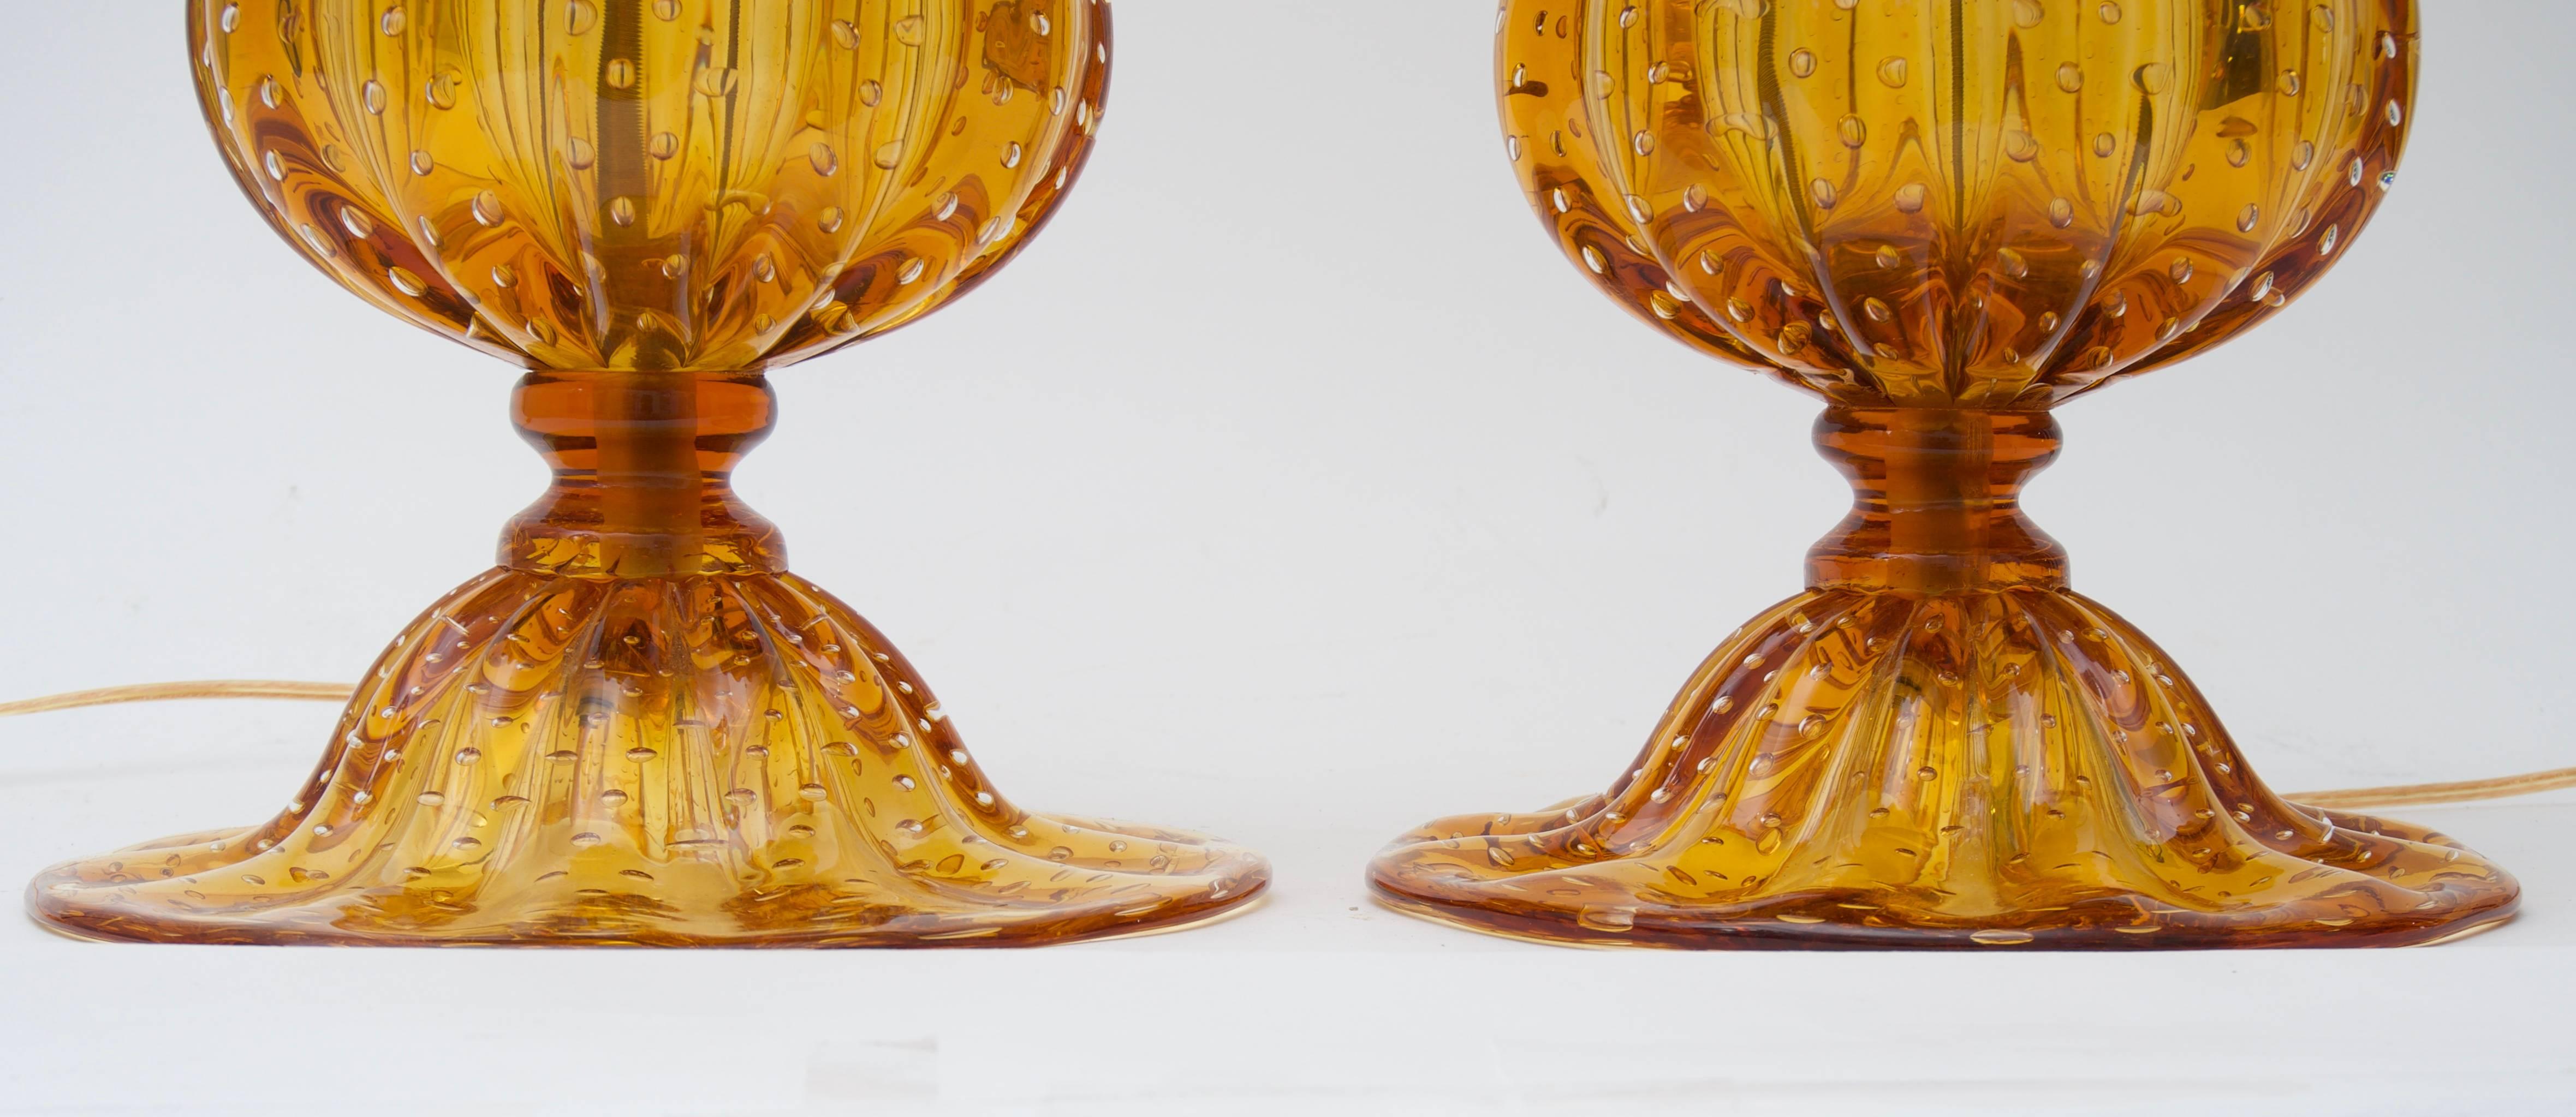 Cette paire de lampes en verre de Murano de grande taille date de la fin du 20e siècle et a été créée par l'artisan verrier Alberto Donà. Les pièces sont d'une coloration dorée profonde selon la technique du Bullicanti (bulles contrôlées). 

Note :